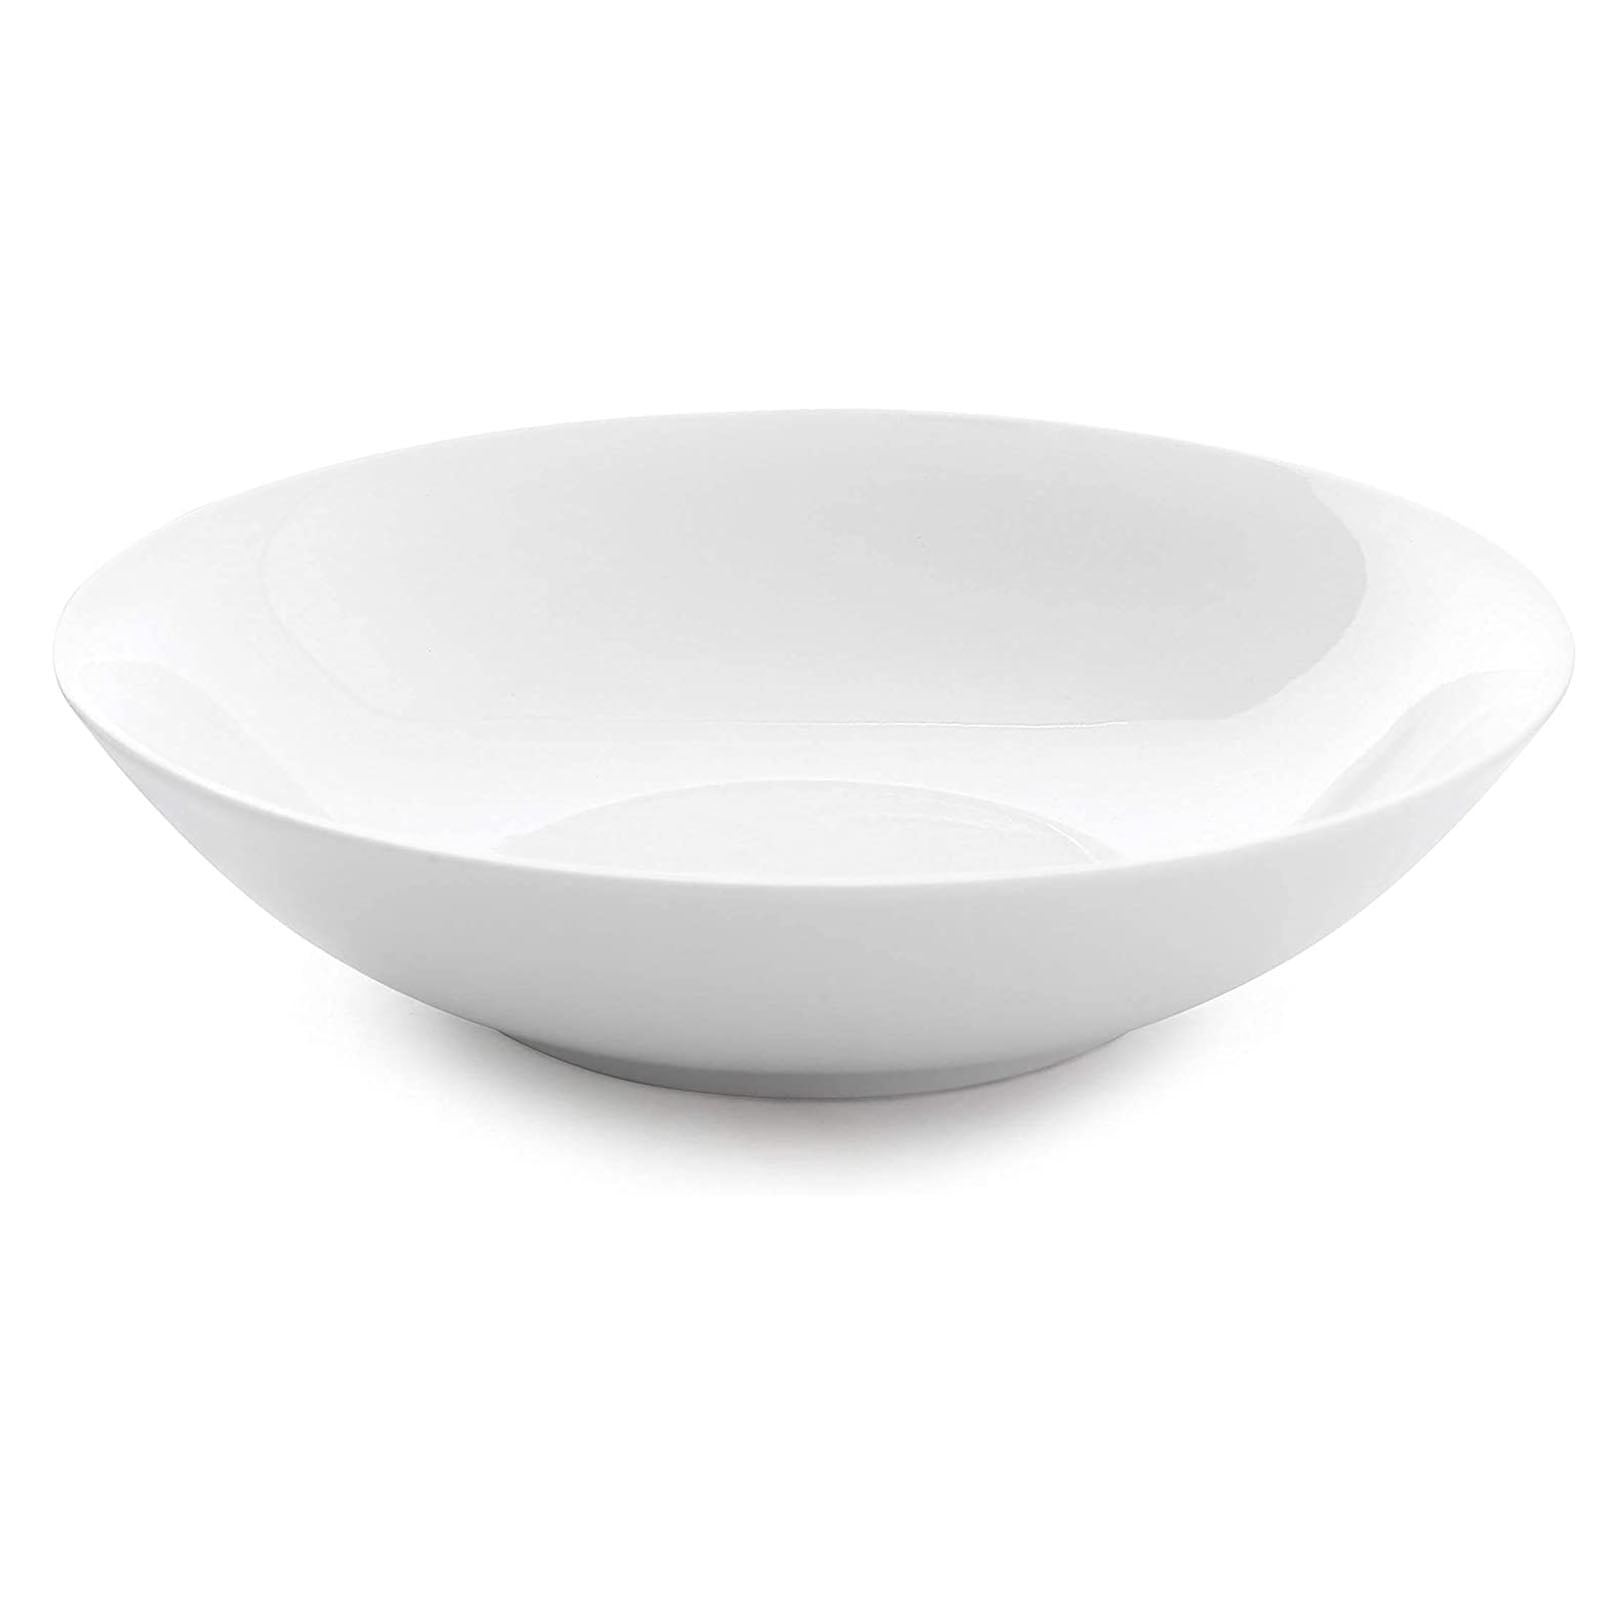 Large white pasta bowls